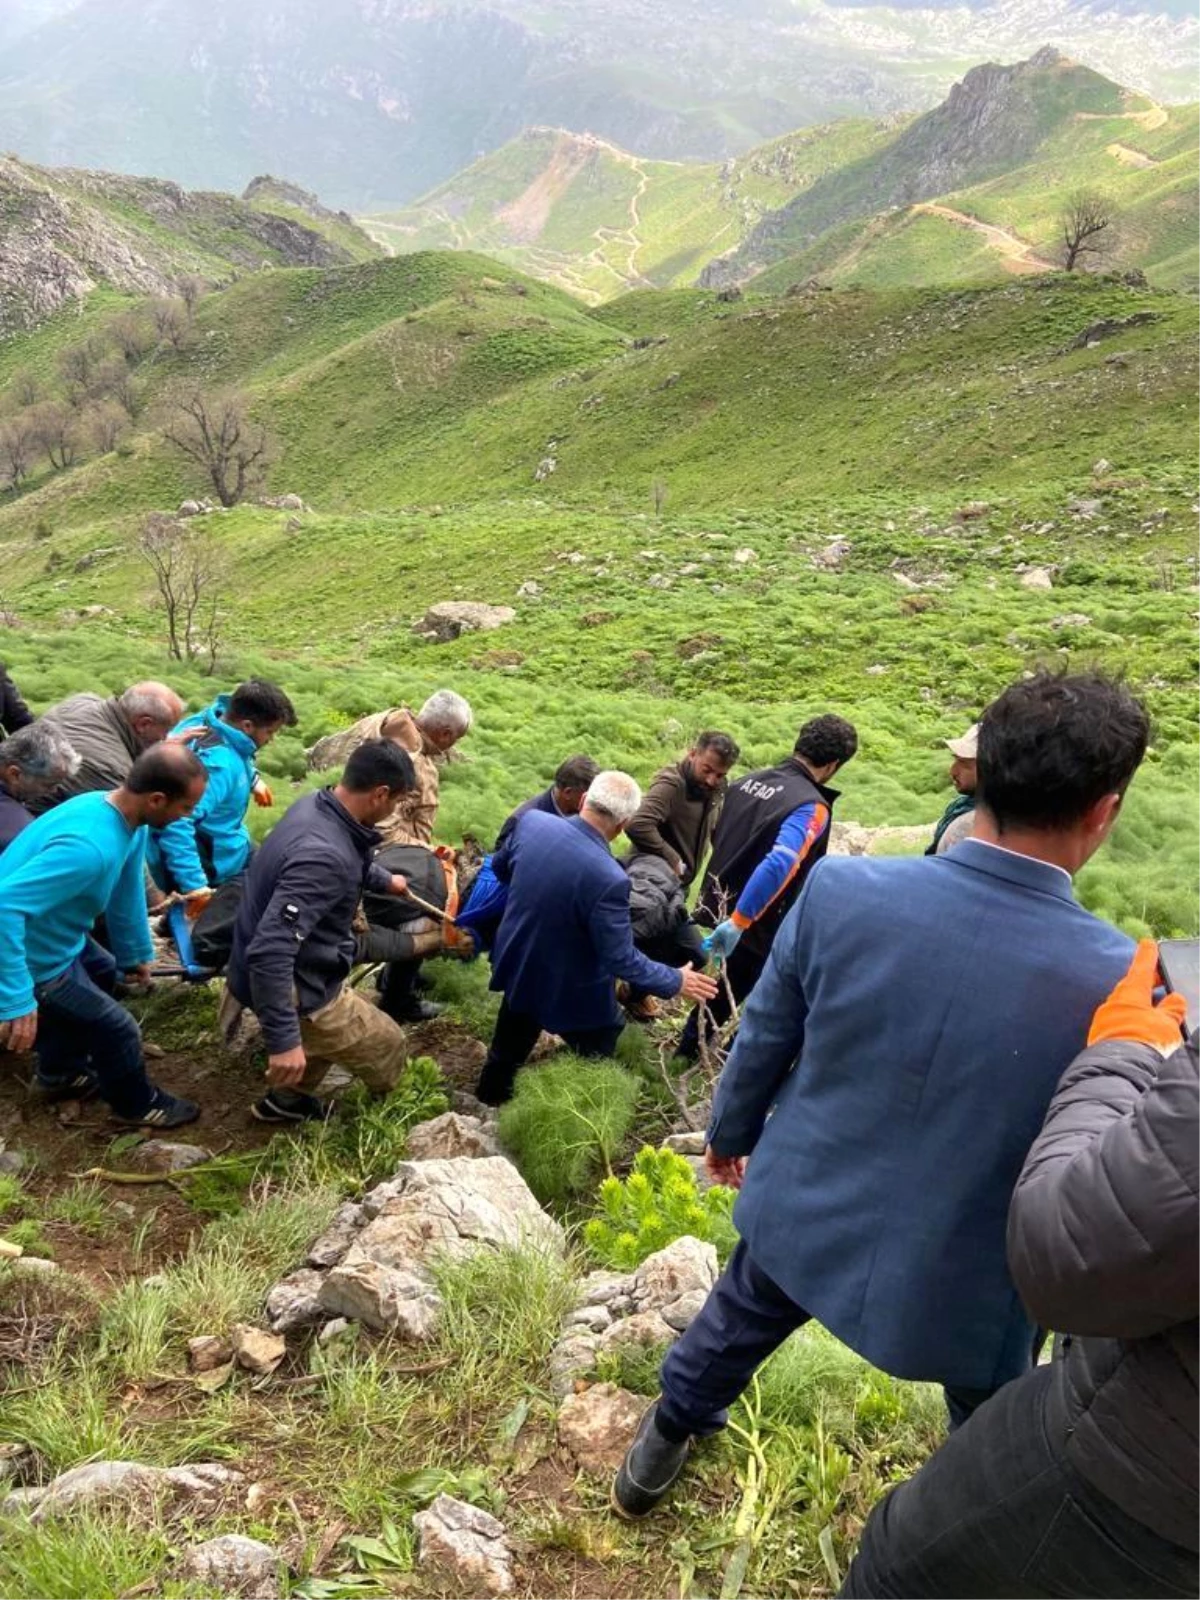 Siirt'te yaban bitkisi toplarken kayalıklardan düşen 60 yaşındaki adam öldü